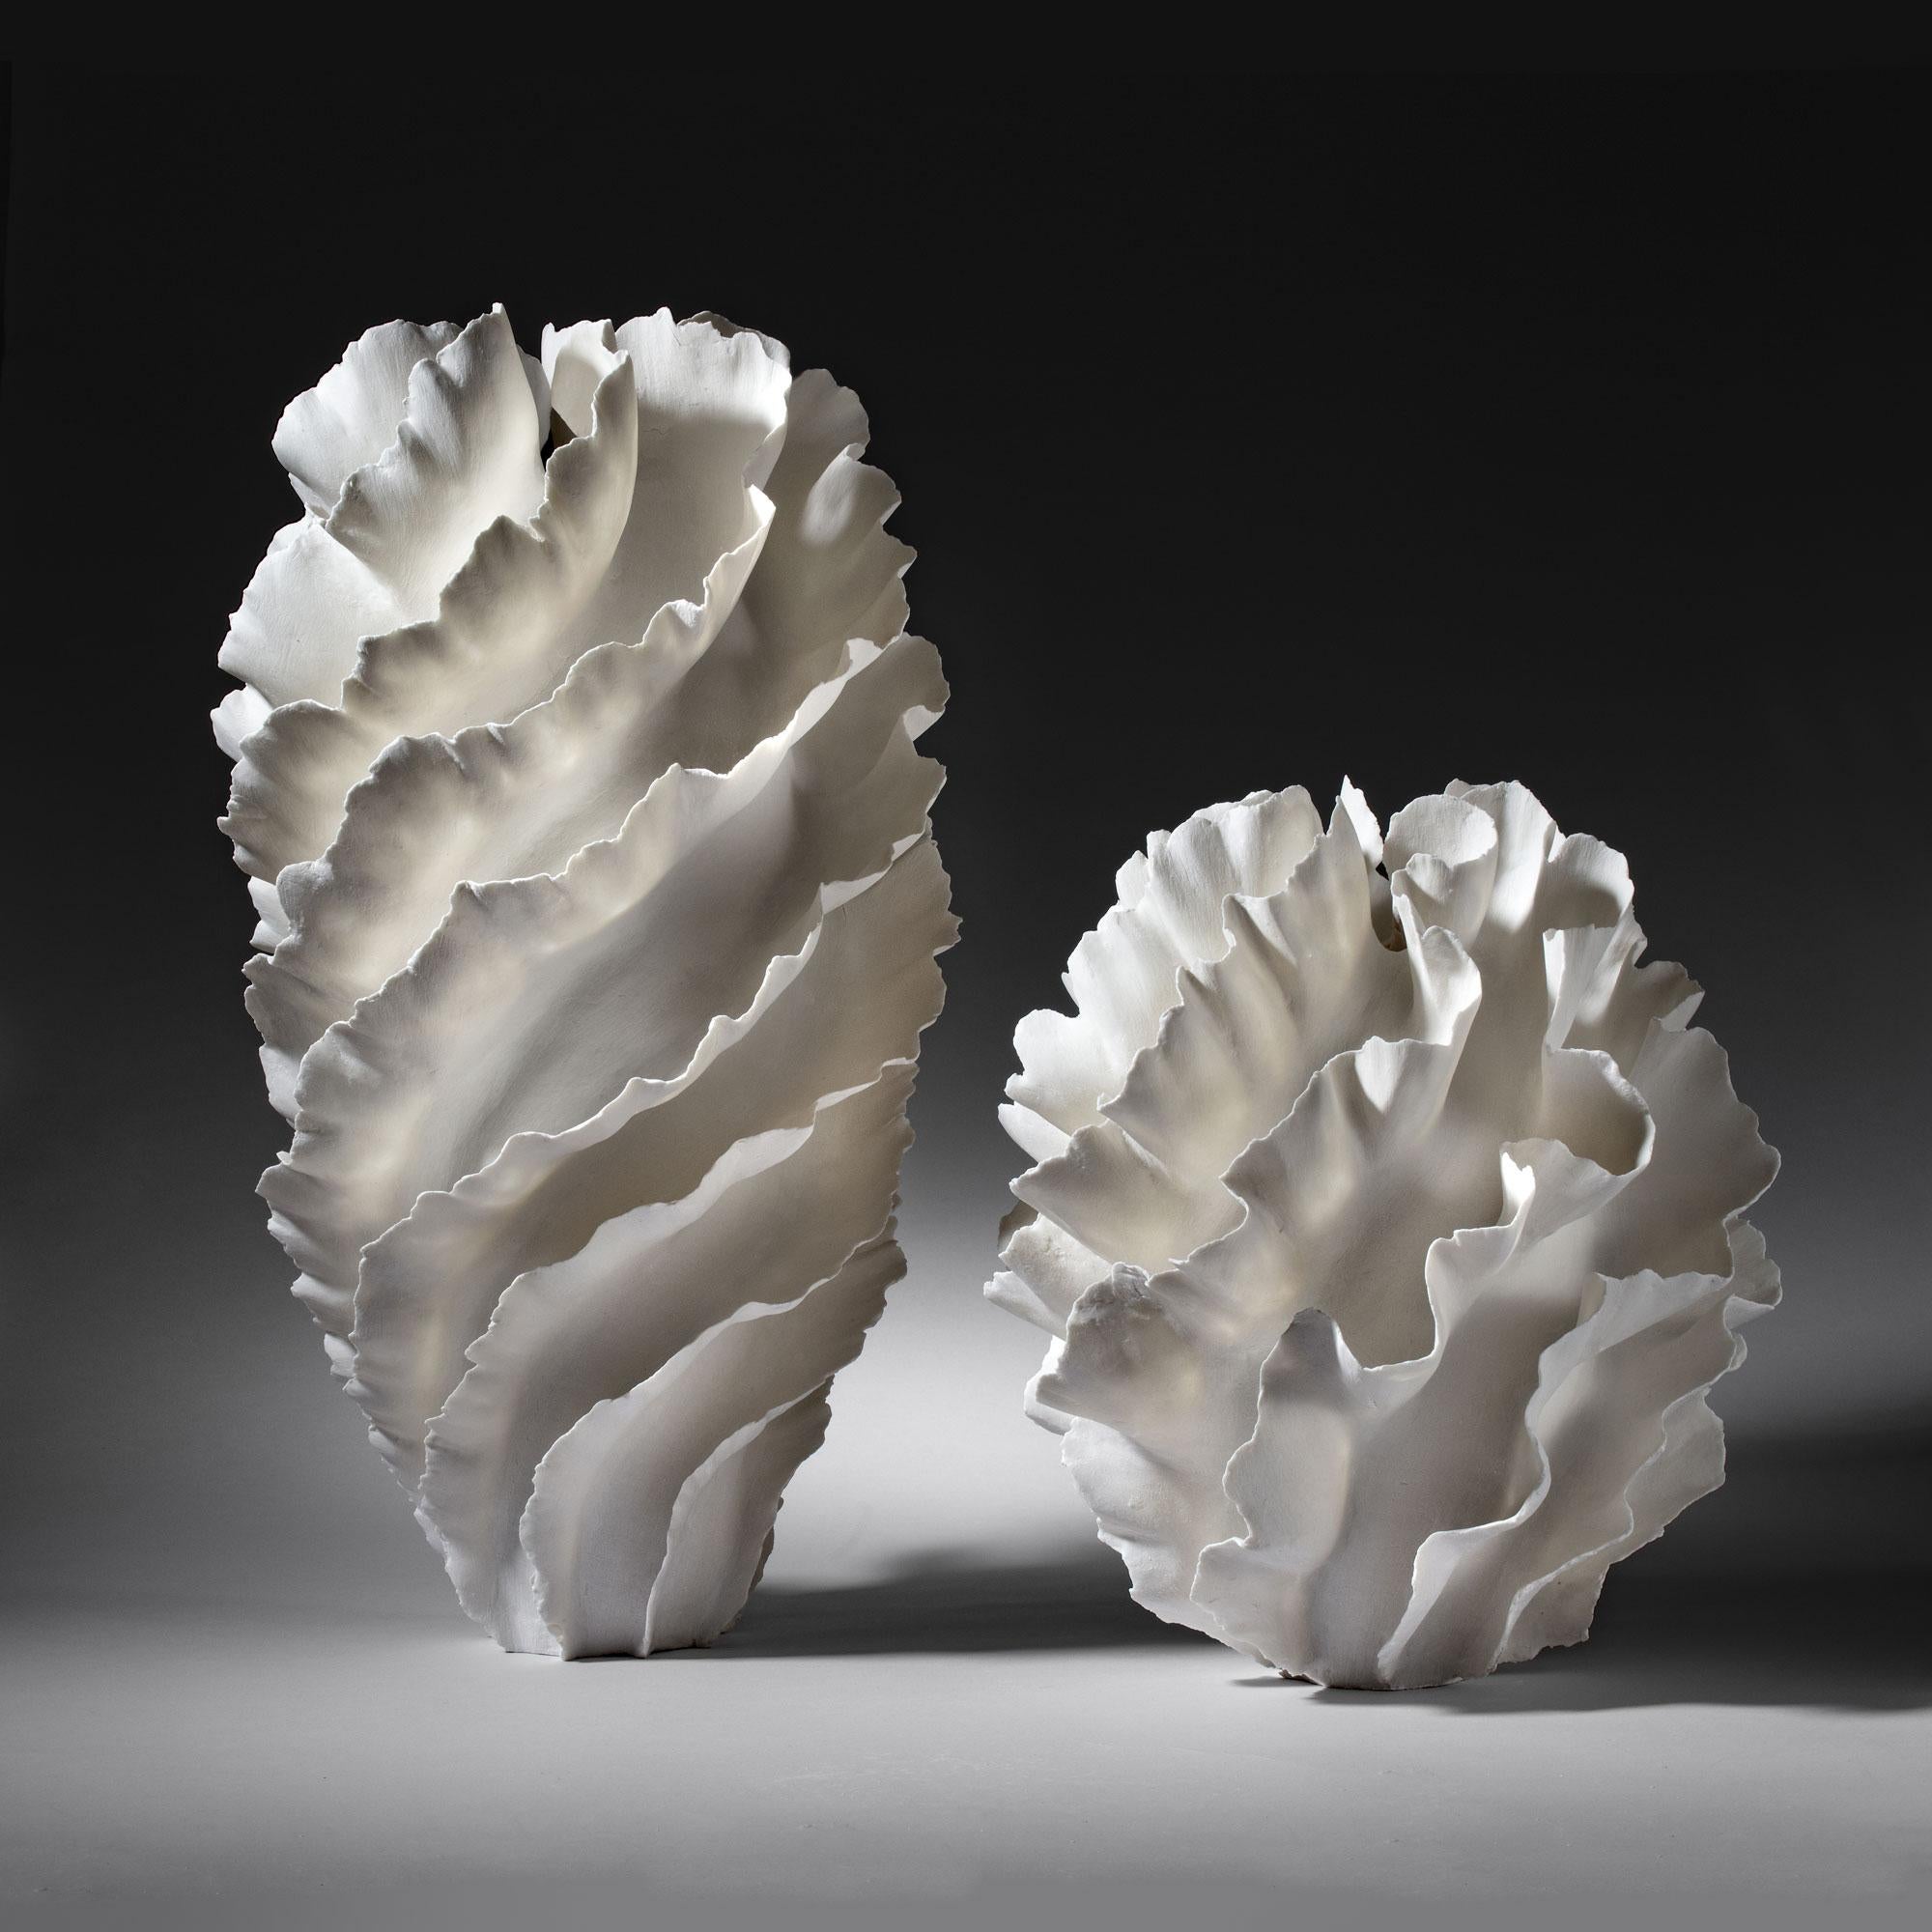 Sandra Davolio
Sculptural vase, 2019
Porcelain
Unique 
Measures: C. 19 in. height x 9.5 in. diameter.

 